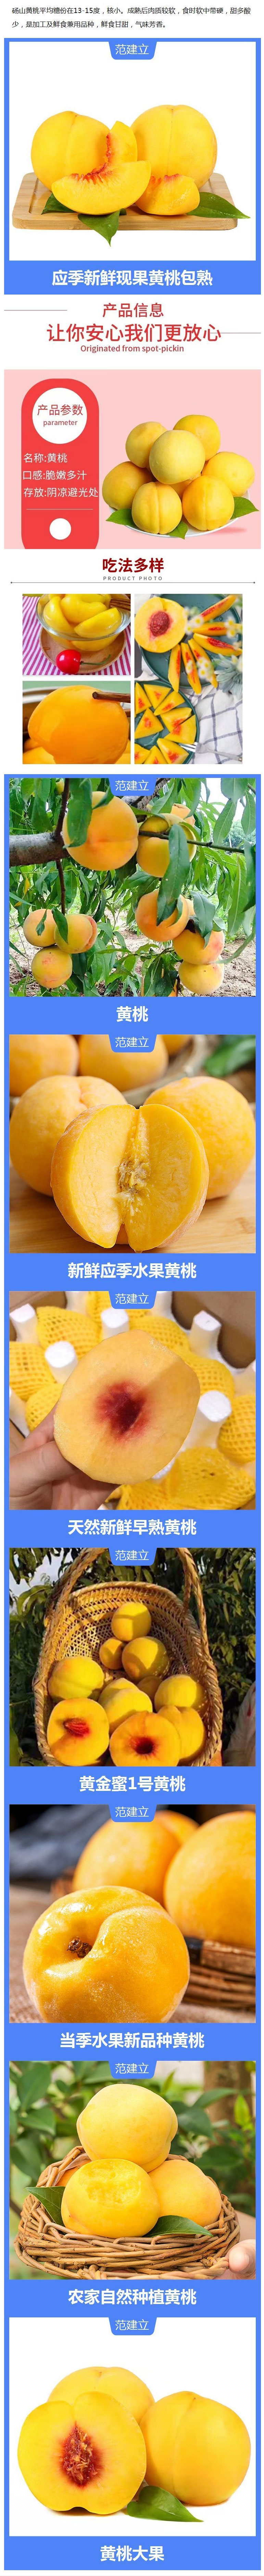 新鲜时令水果-锦绣黄桃-果型比较大-外观漂亮-肉色金黄.jpg